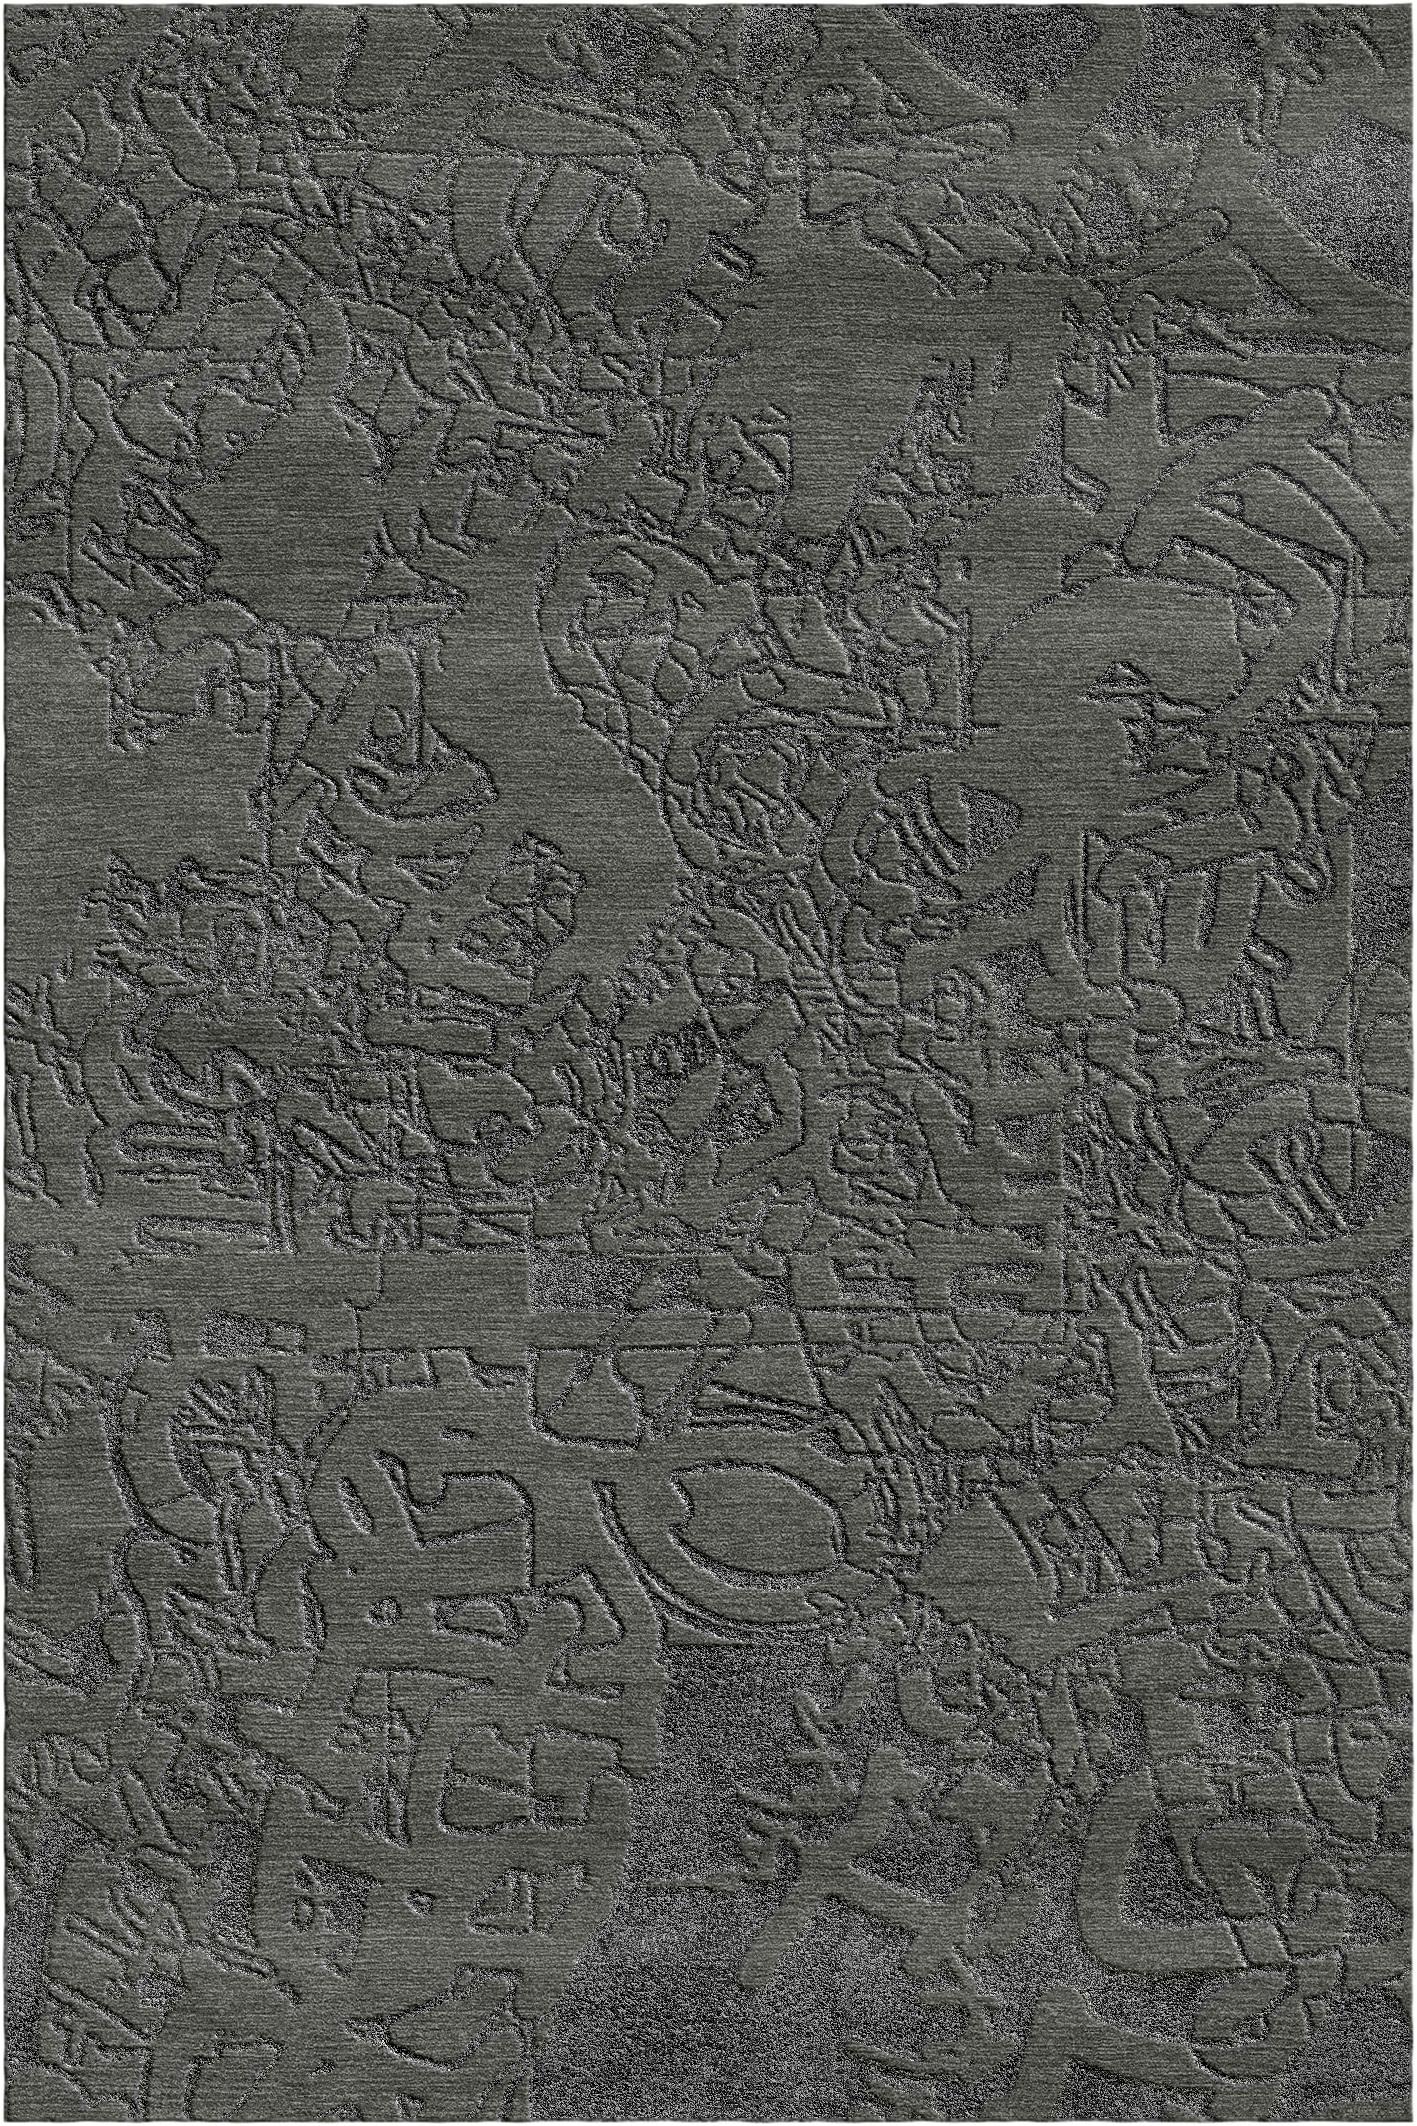 Schwarzer Frammenti-Teppich von Giulio Brambilla
Abmessungen: D 300 x B 200 x H 1,5 cm
MATERIALIEN: NZ-Wolle, Bambusseide
Erhältlich in anderen Farben. Kundenspezifische Größen und Farben sind ebenfalls erhältlich.

Dieser elegante und raffinierte